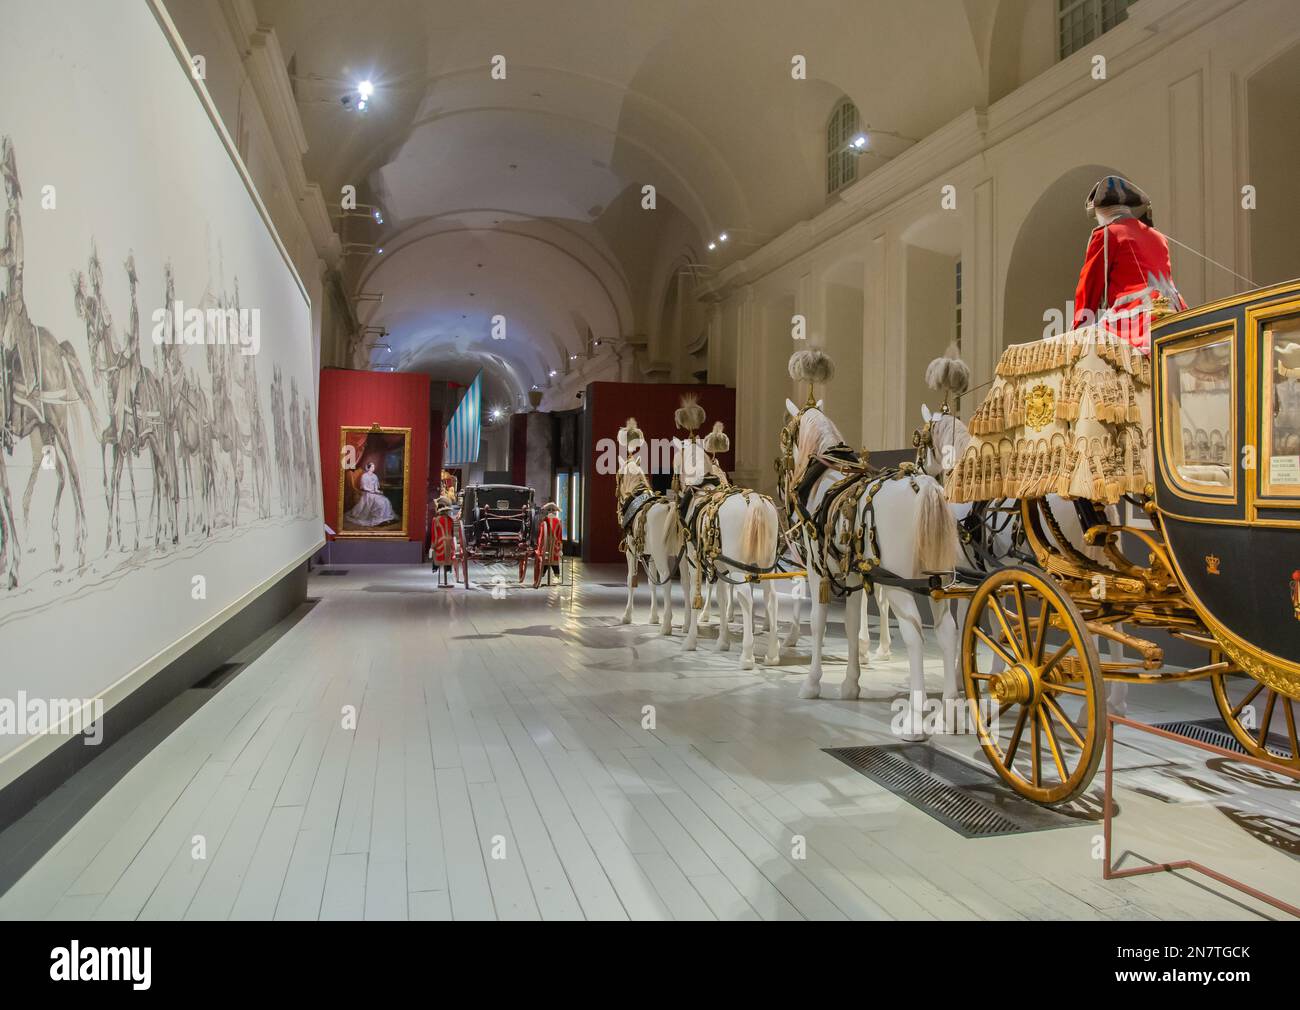 Royal stables - exposition 'le Bucentaure et les calèches Royales' - Venaria Reale, Turin, Piémont, Nord de l'Italie - Europe Banque D'Images